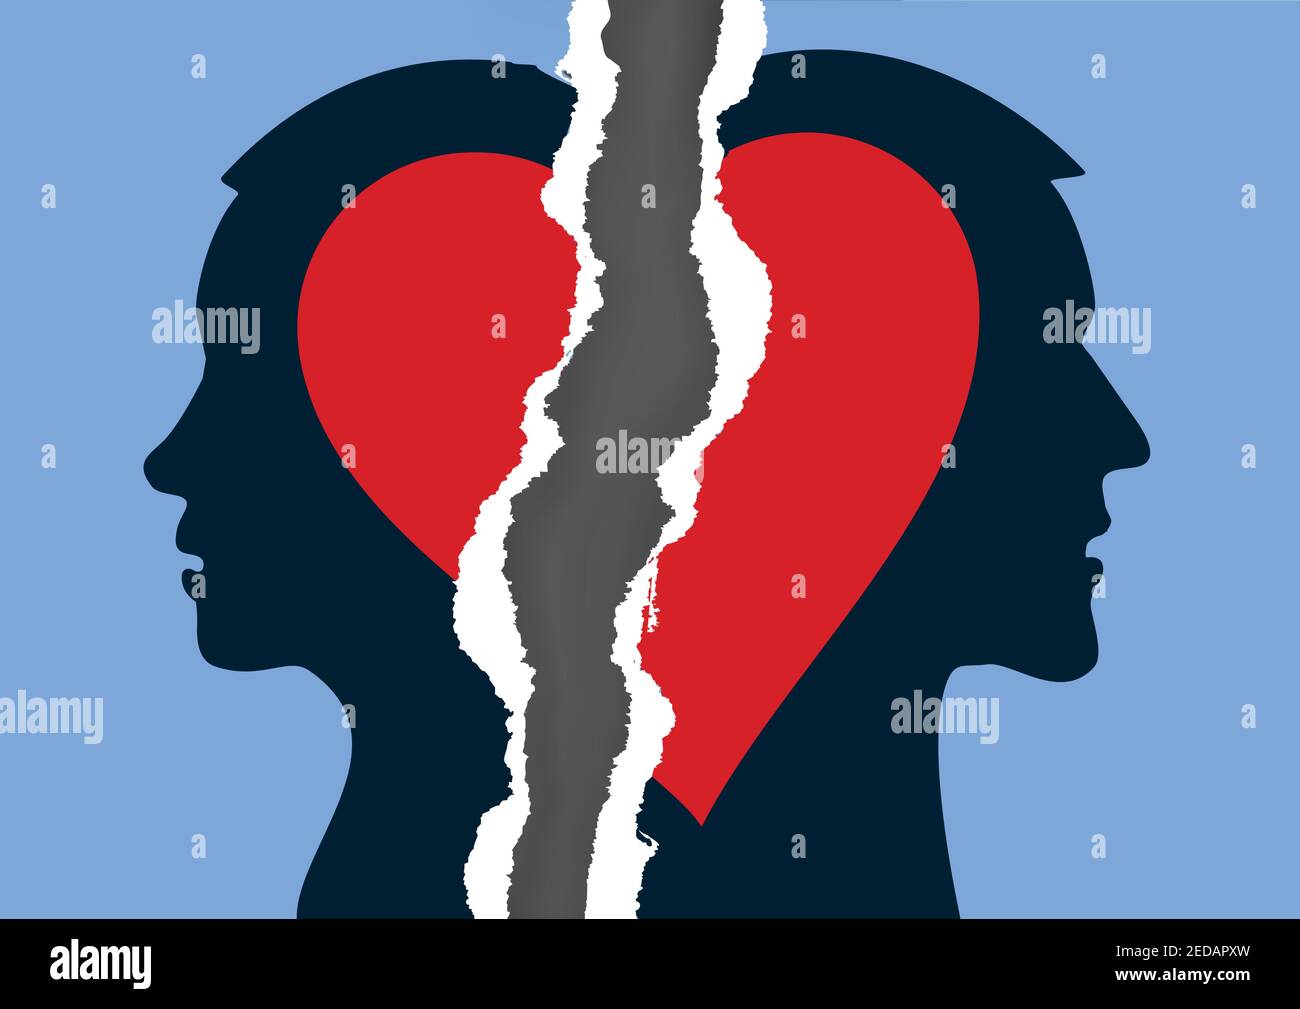 Scheidung Paar und zerrissenes Papier Herz. Zerrissenes Papier mit stilisierten Silhouetten von Mann und Frau, die ein geschiedenes Paar symbolisieren. Vektor verfügbar. Stock Vektor